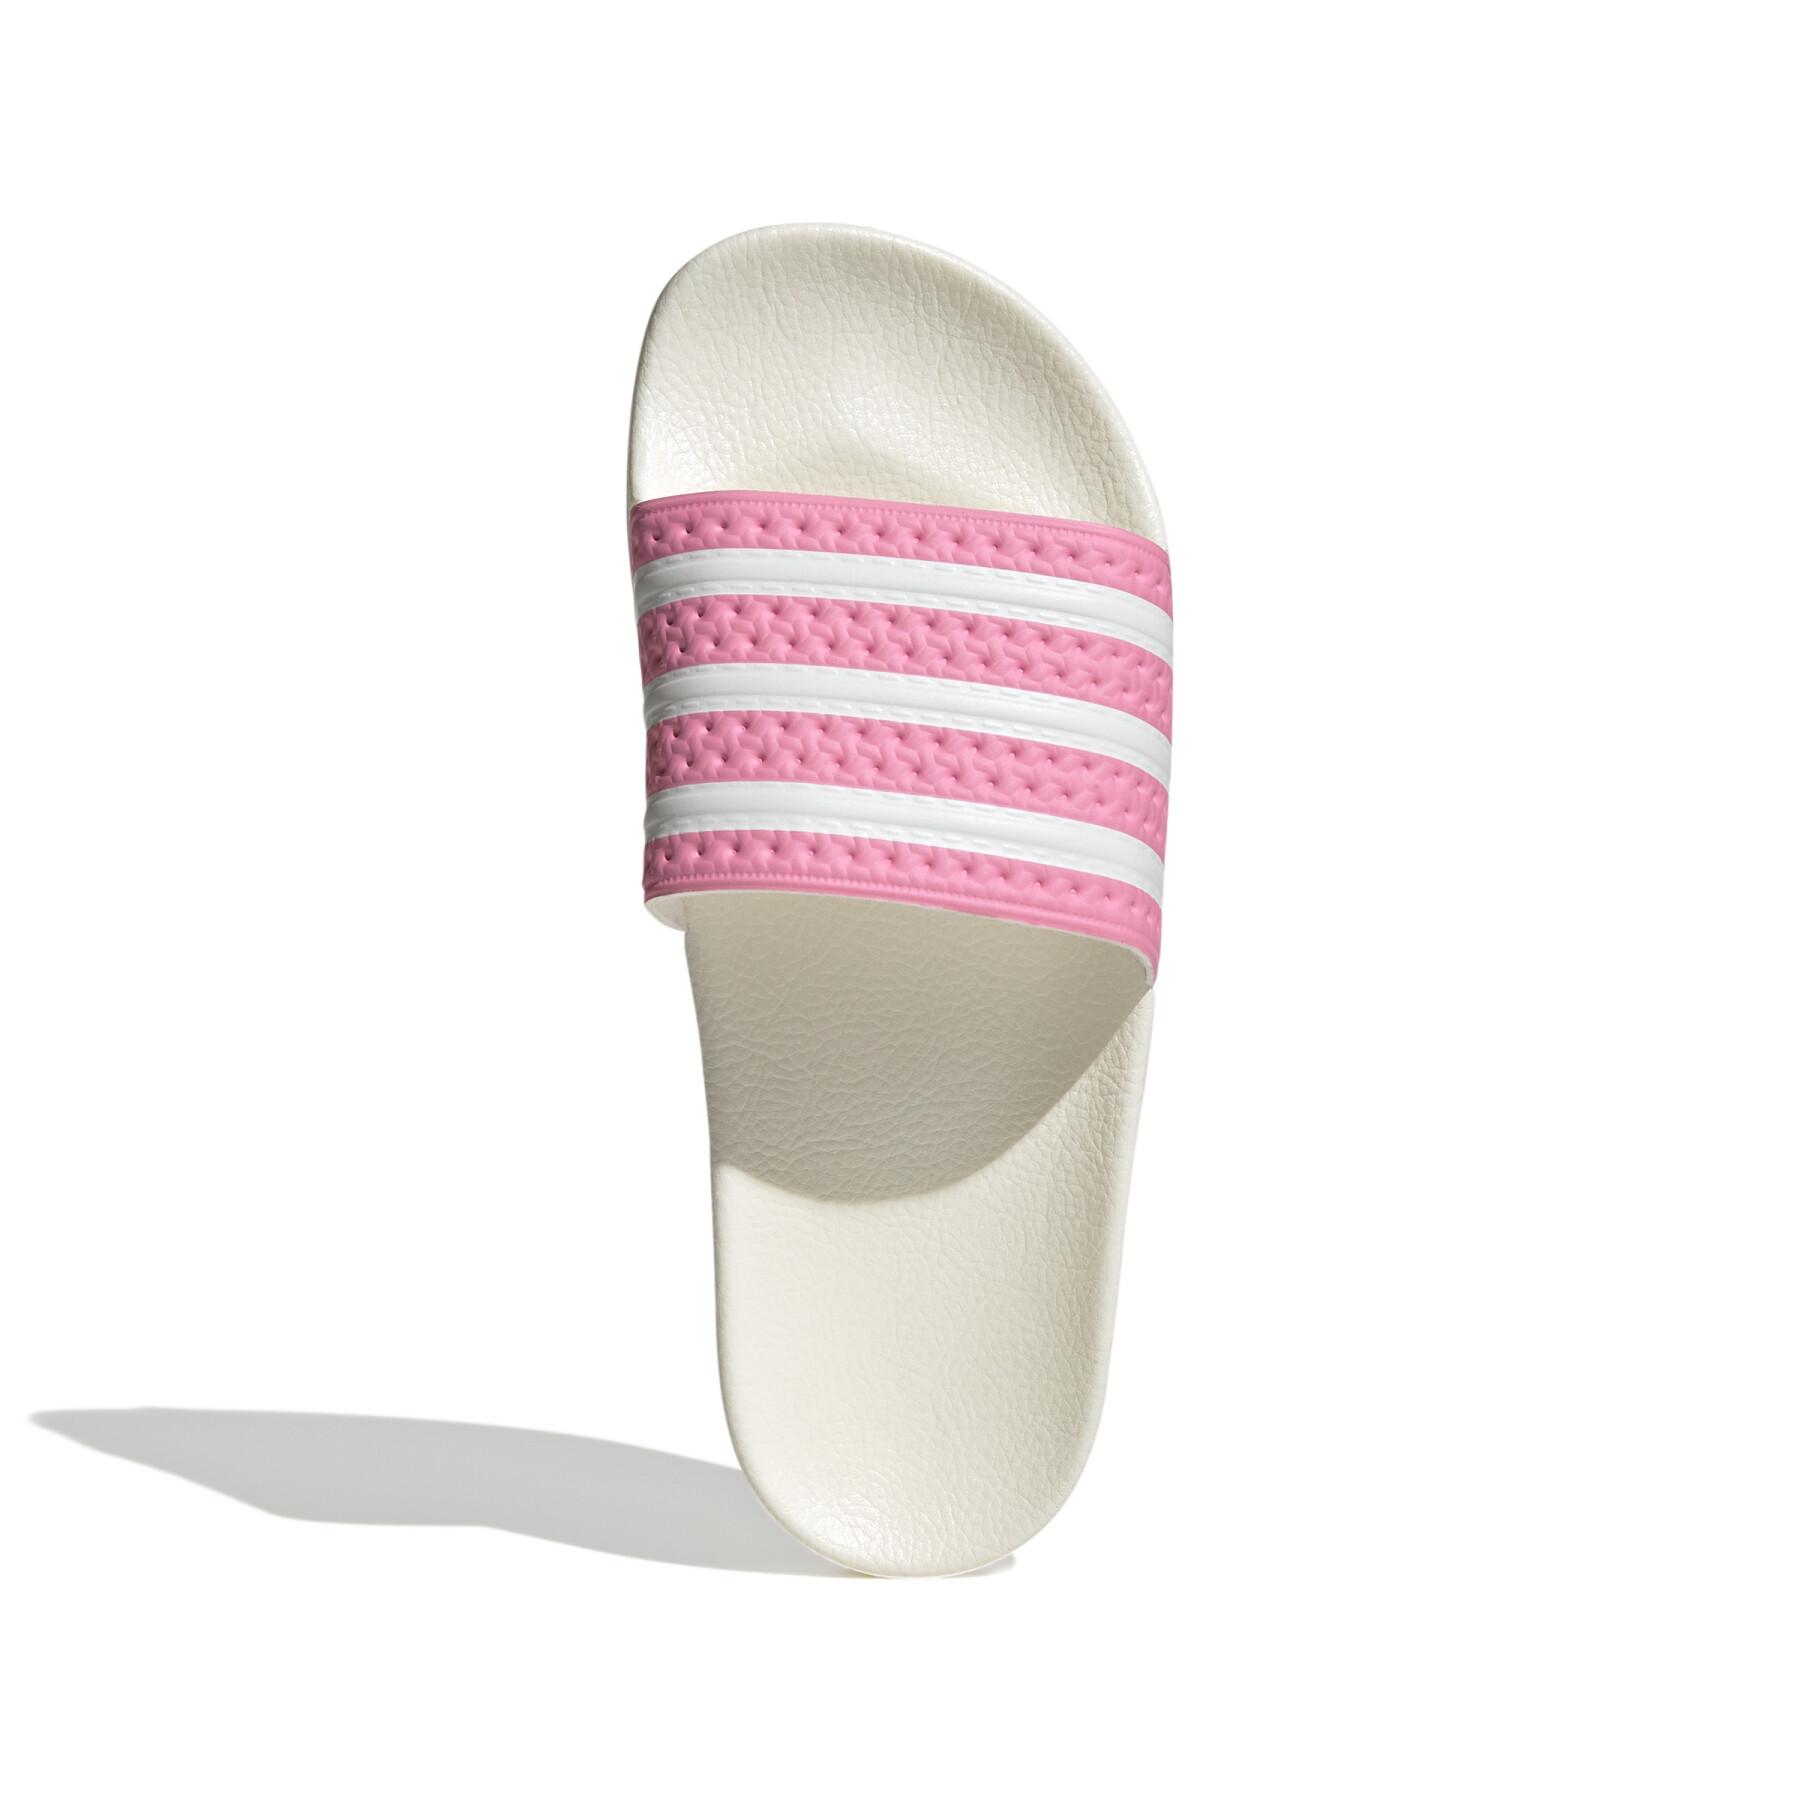 Women's flip-flops adidas Originals Adilette